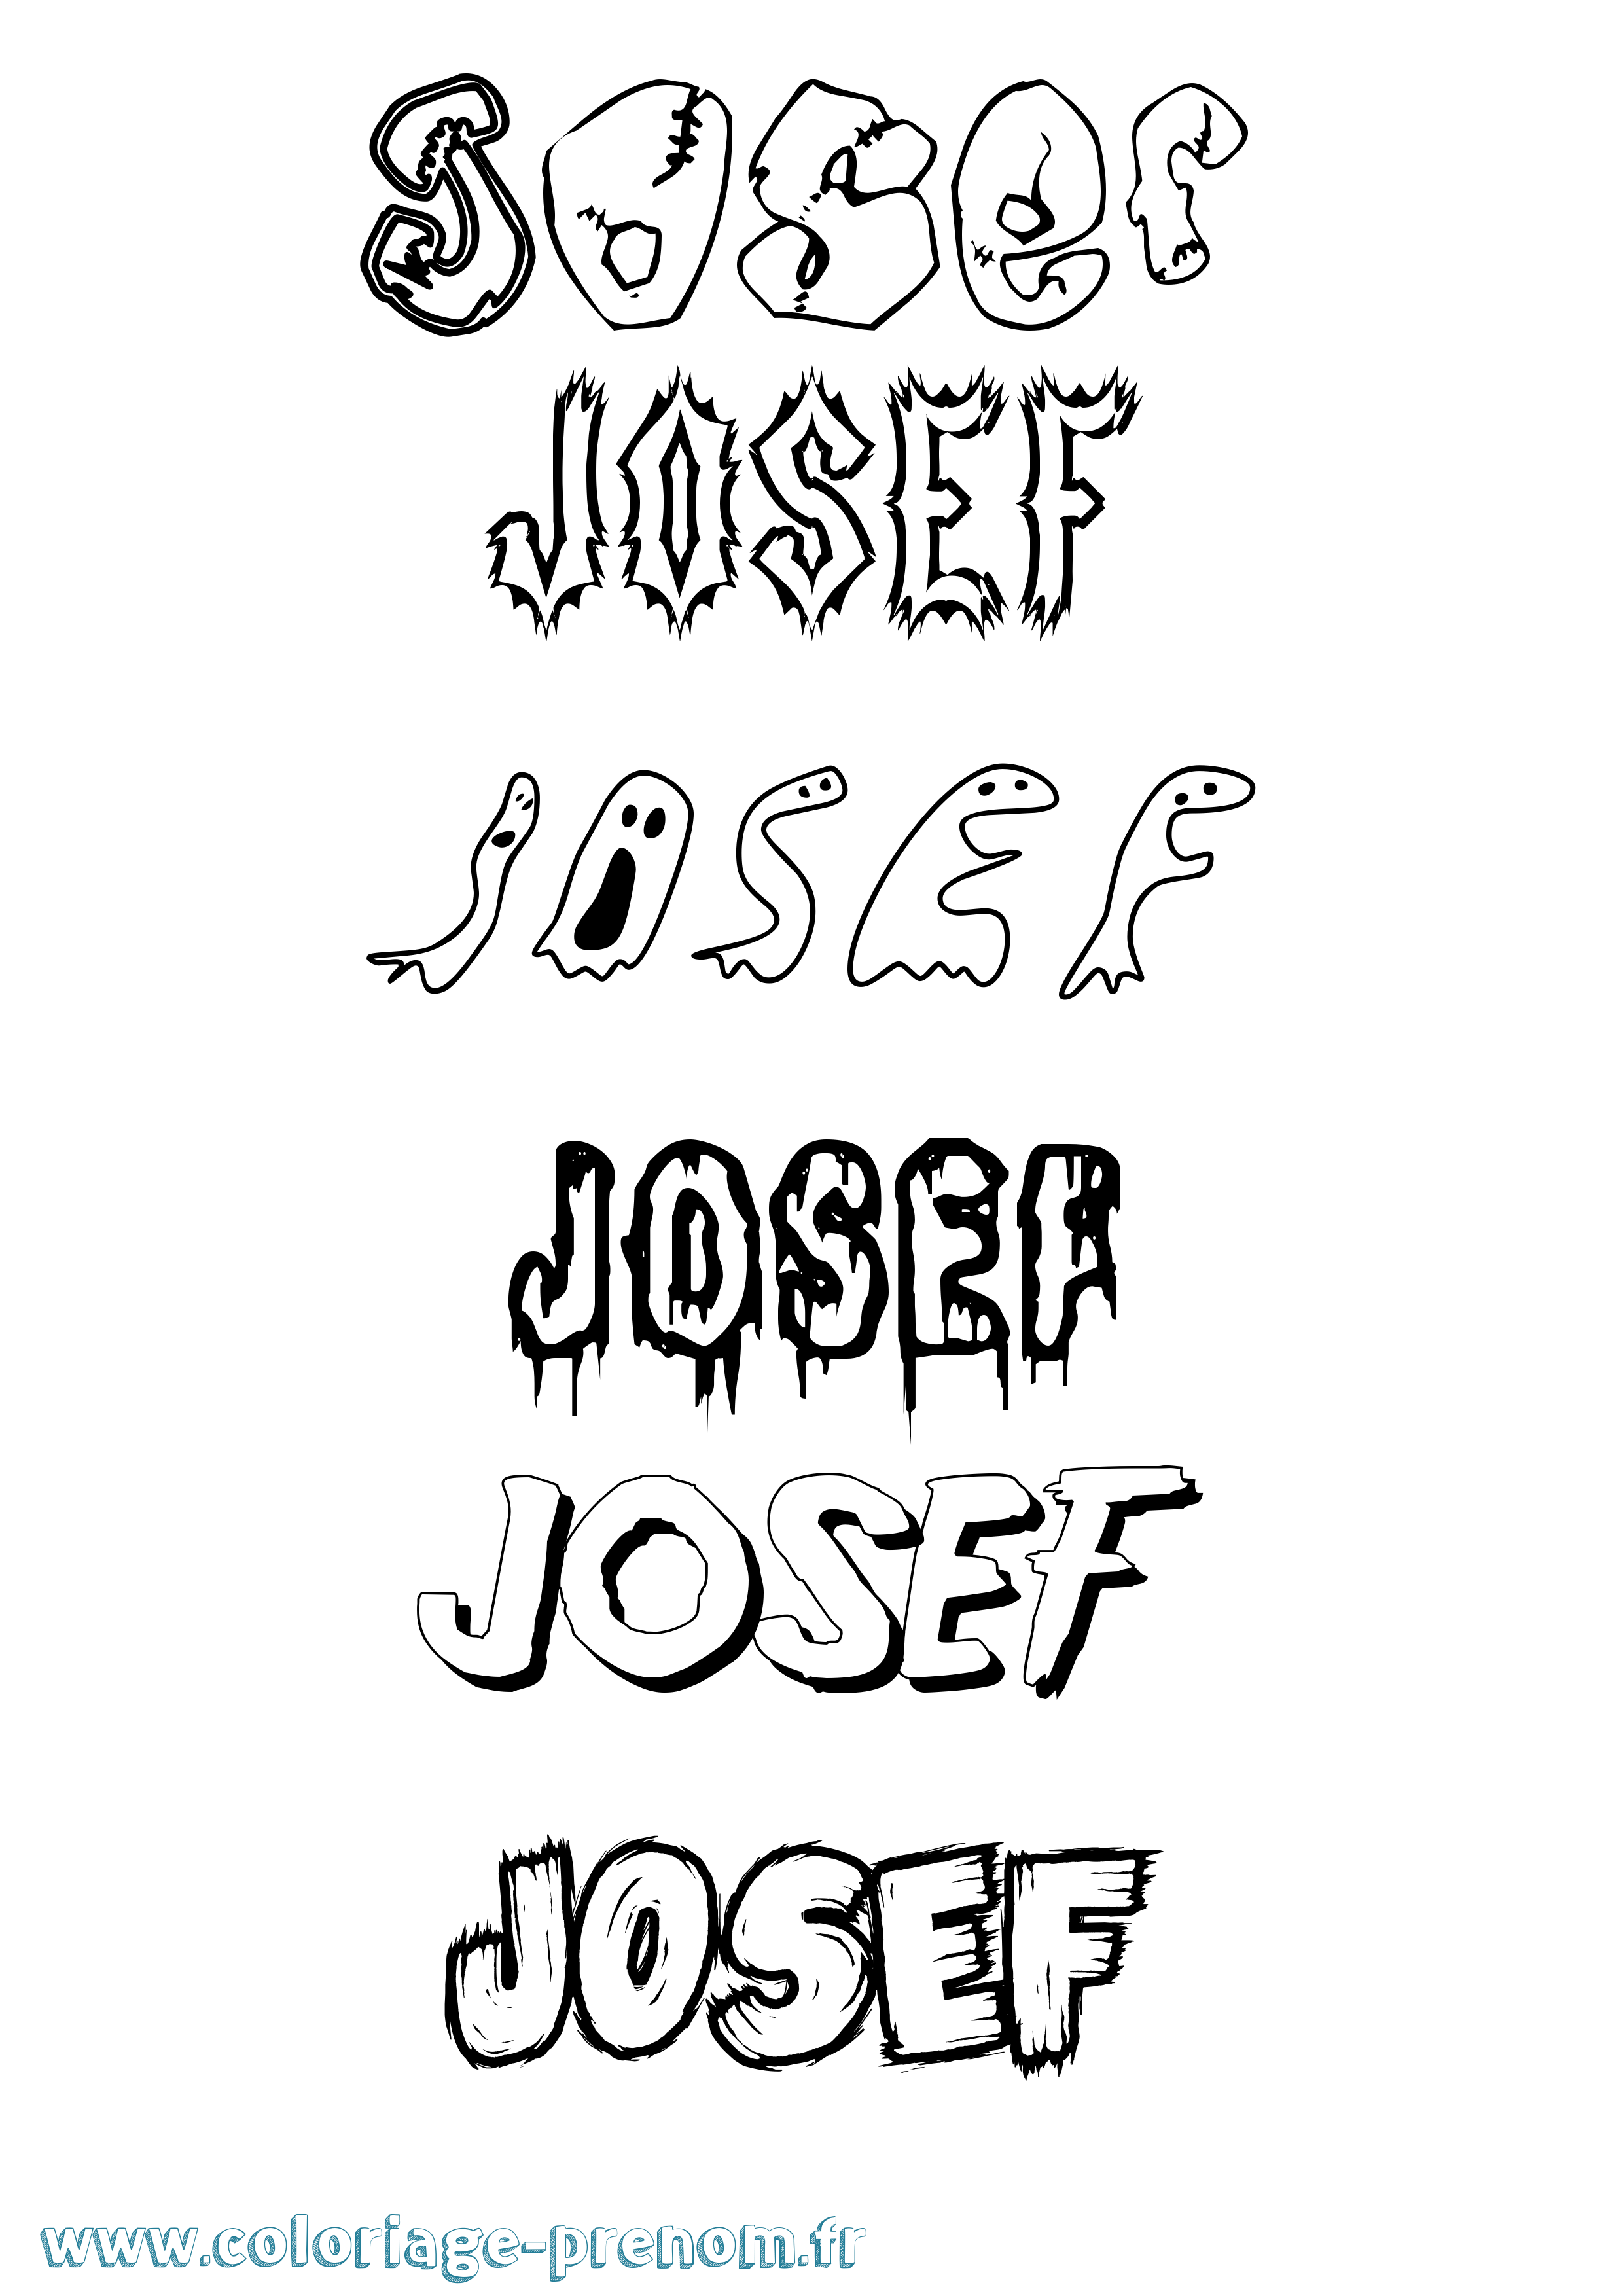 Coloriage prénom Josef Frisson